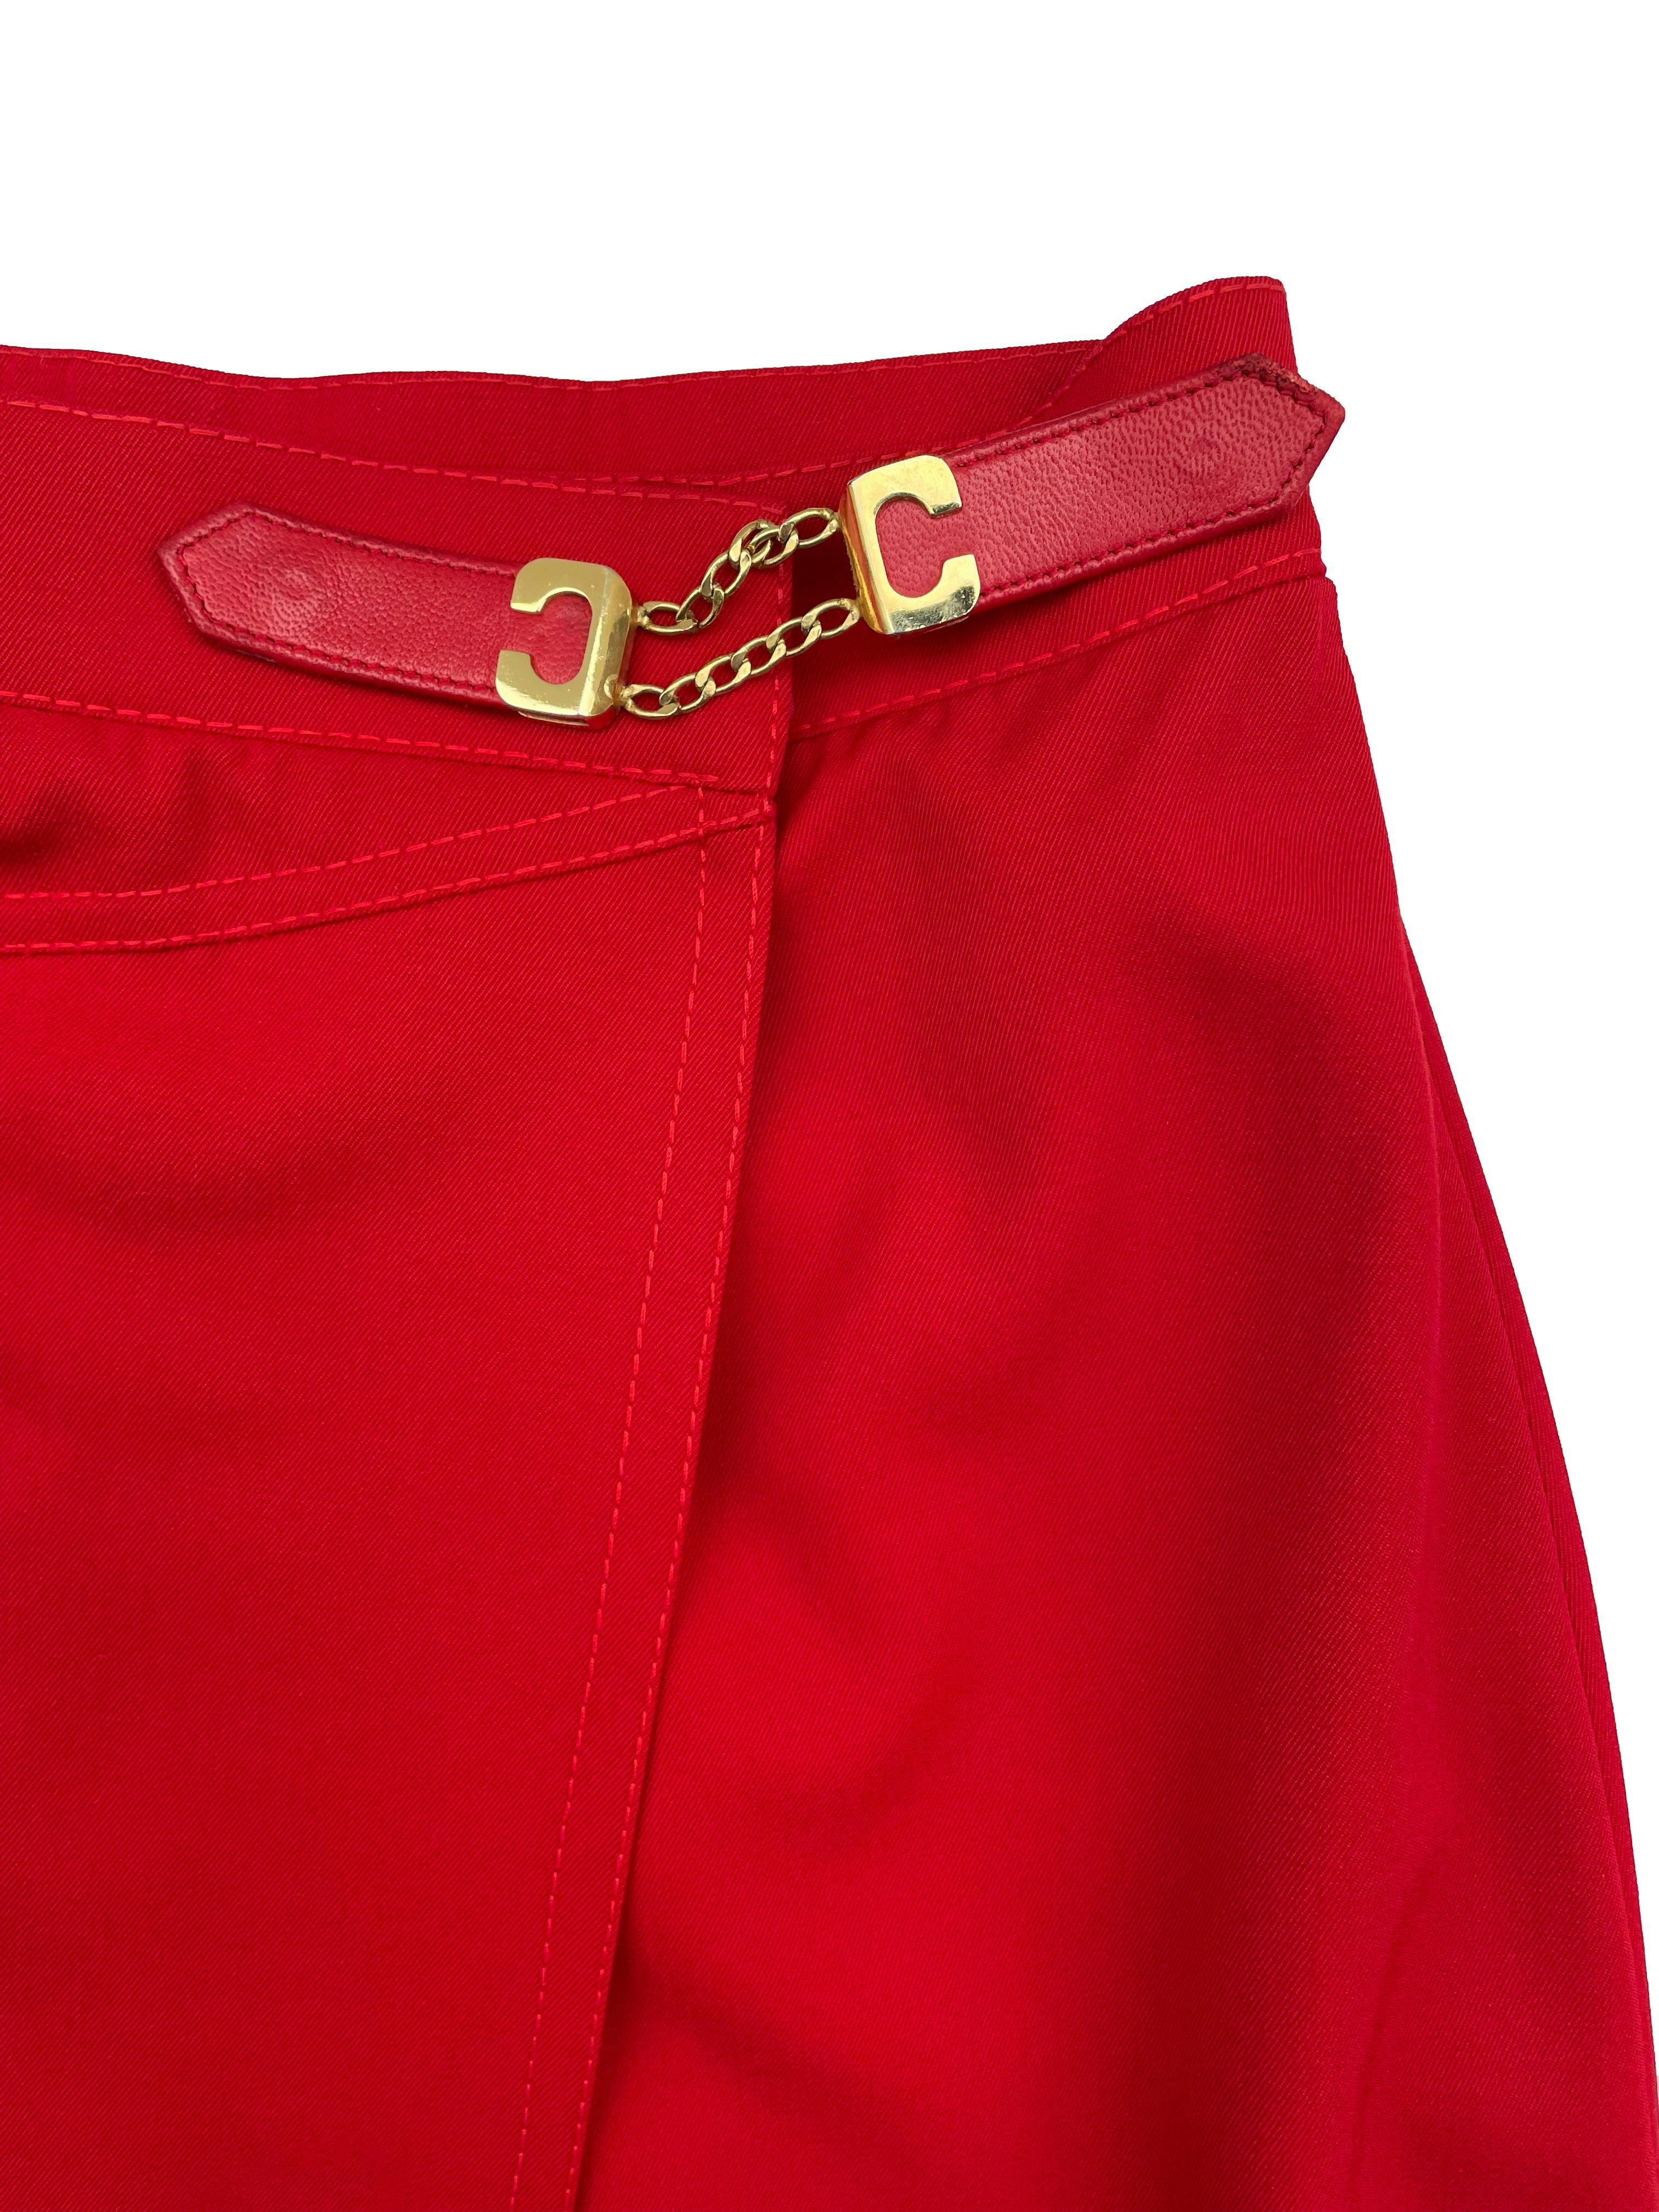 Falda vintage envolvente ,de drill rojo con forro, 100% lana con un bolsillo lateral. Marca vintage Paris. Cintura 62cm, Largo 69cm.